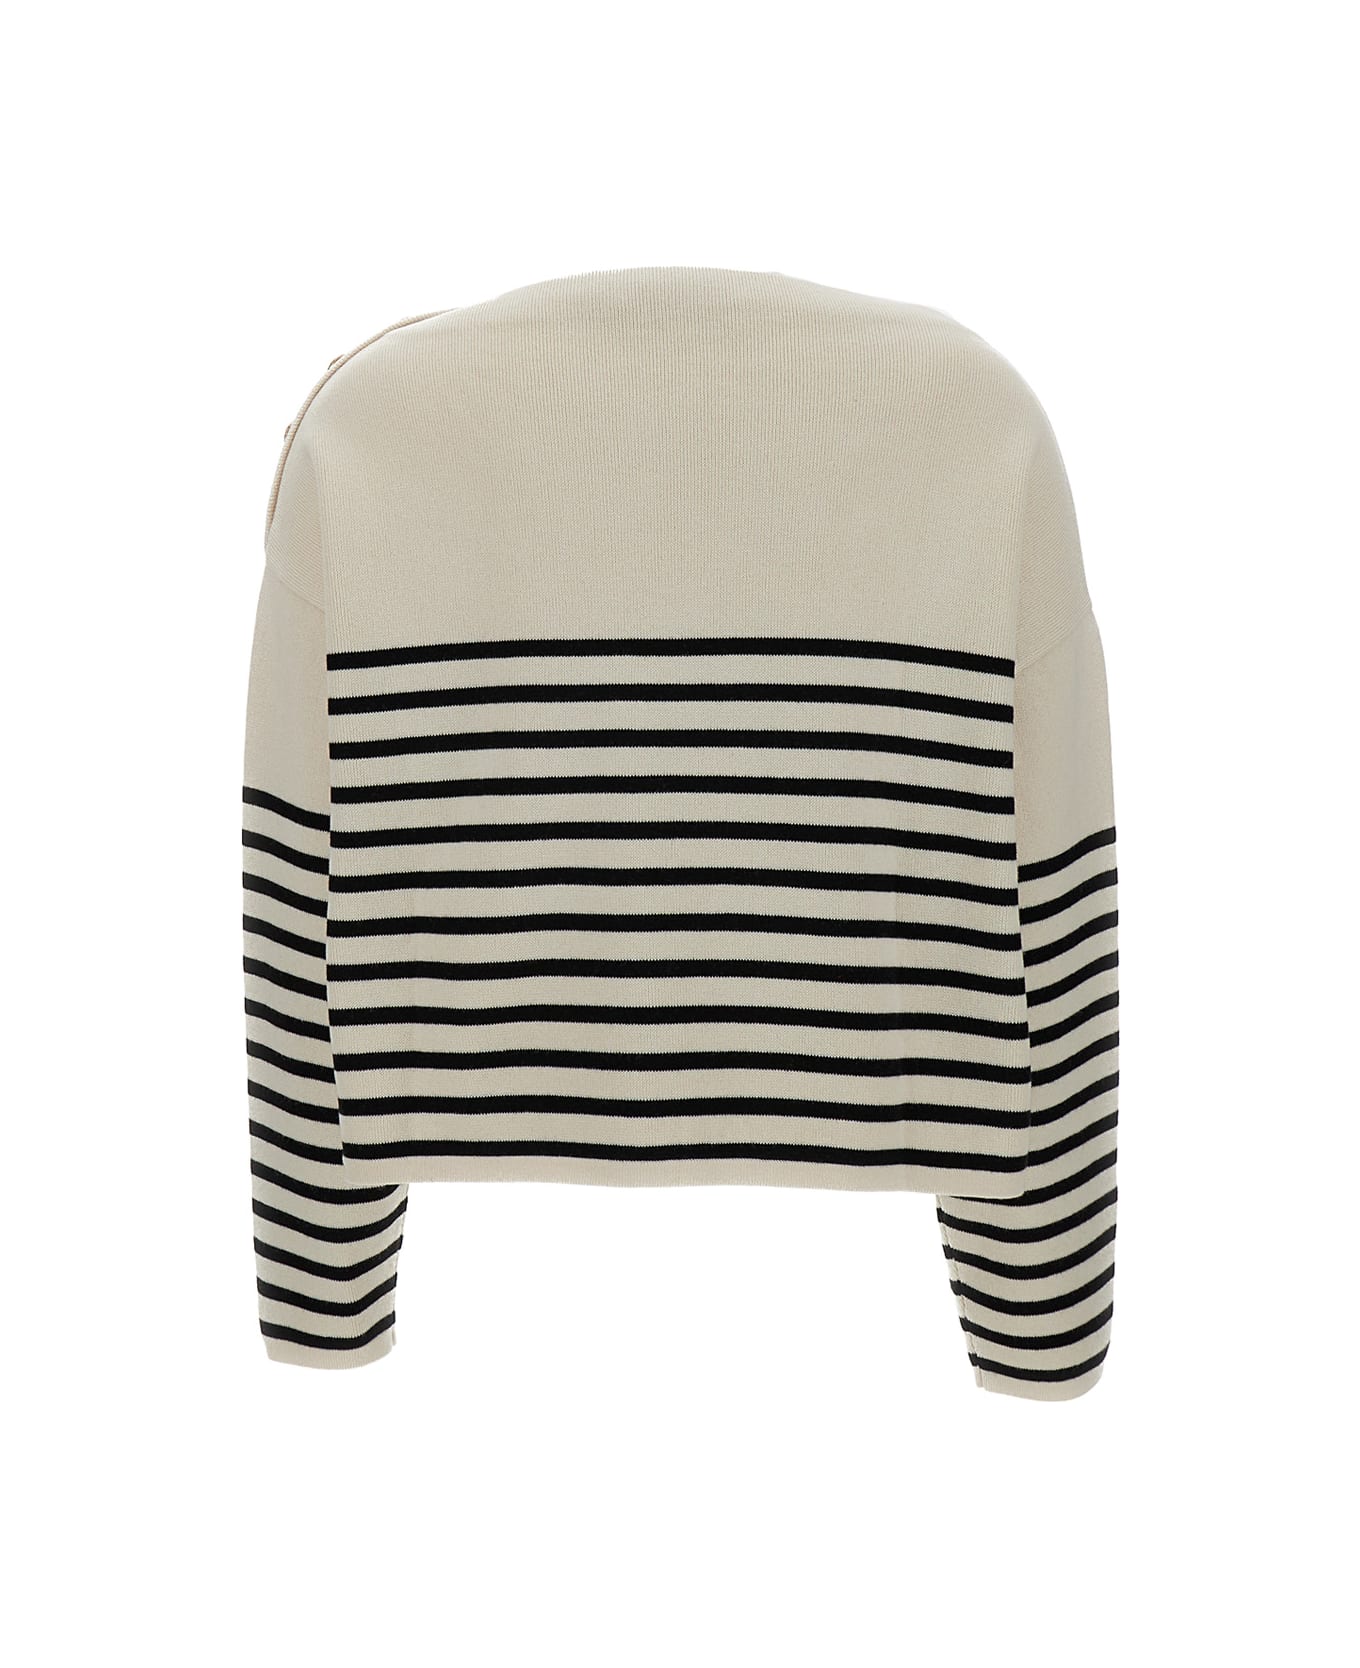 Philosophy di Lorenzo Serafini Black & White Boat Neck Sweater In Cotton Blend Woman - White